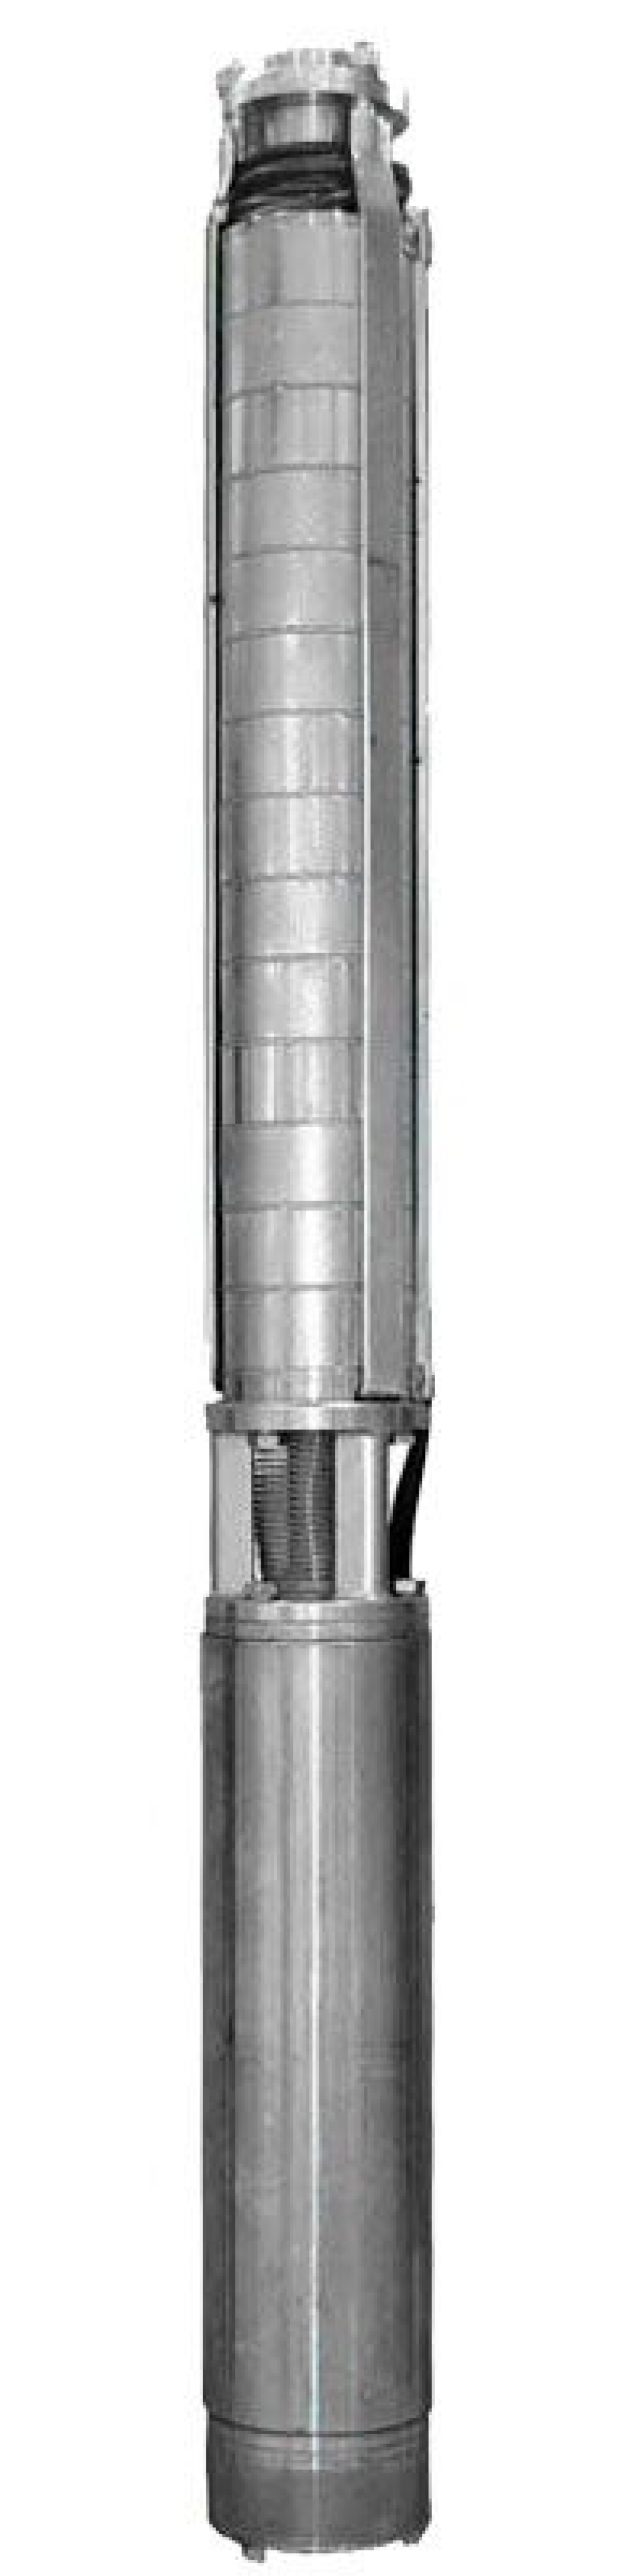 Насос скважинный Ливнынасос ЭЦВ 4-2.5-200 центробежный, производительность 2.5 м3/час, напор 200 м, мощность 3 кВт, напряжение трехфазной сети 380В